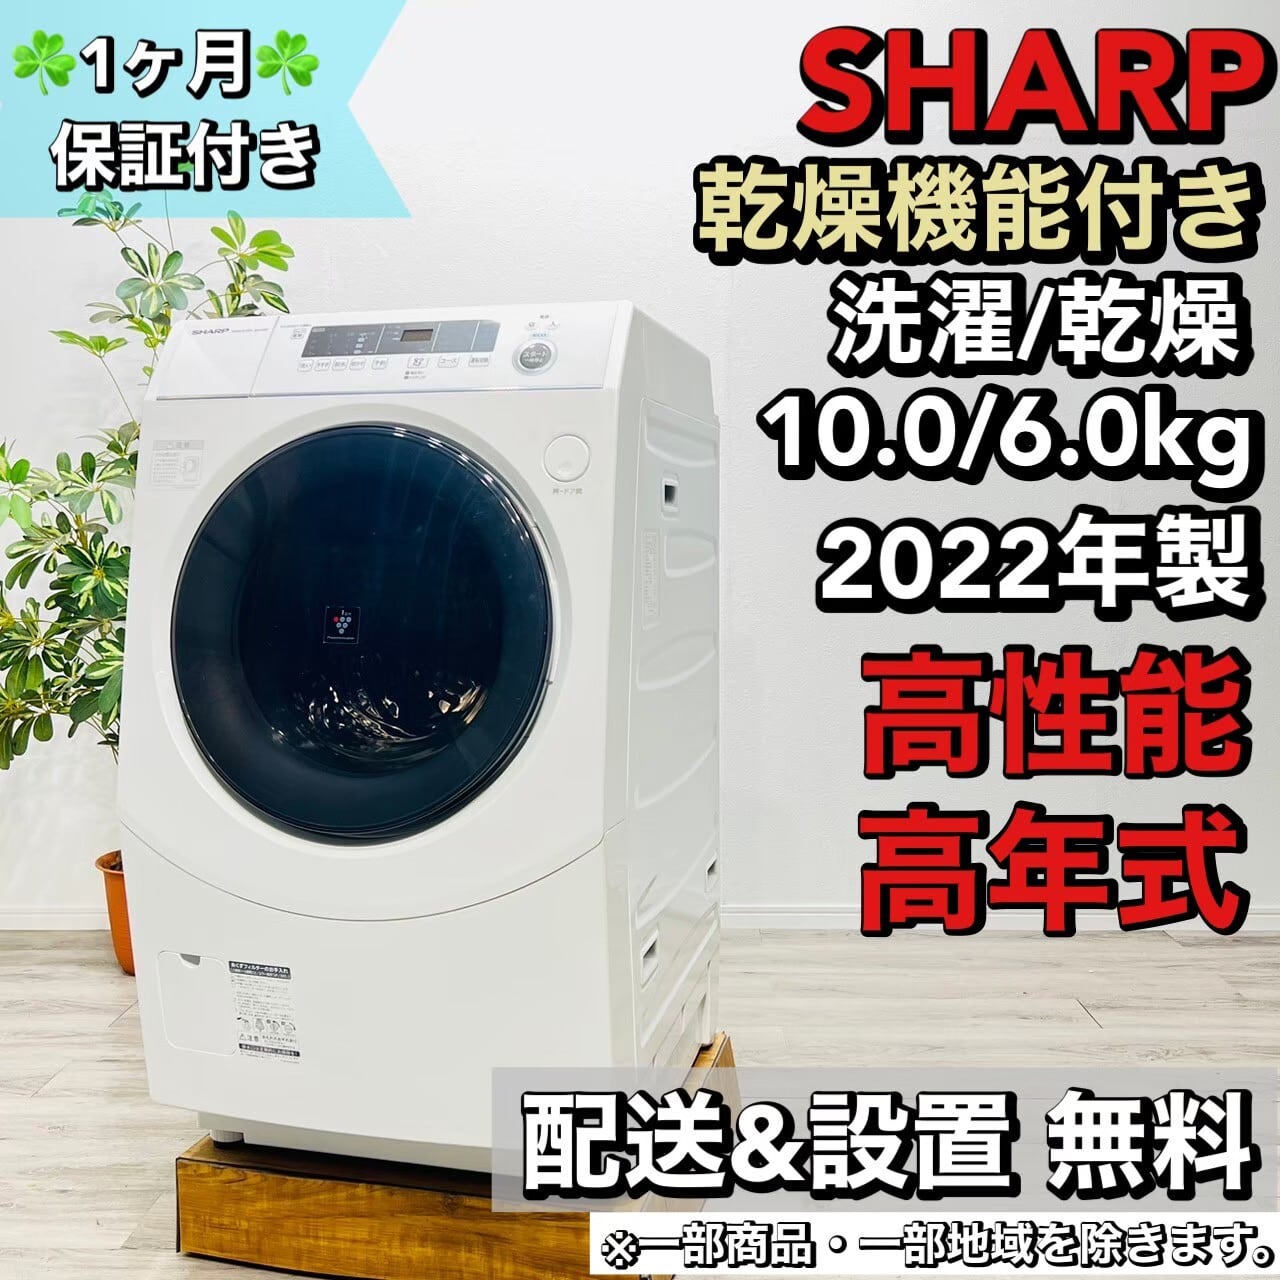 全国配送無料✨ 即日配送‼️ SHARP SJ-H13E-S 2020年製 - 冷蔵庫